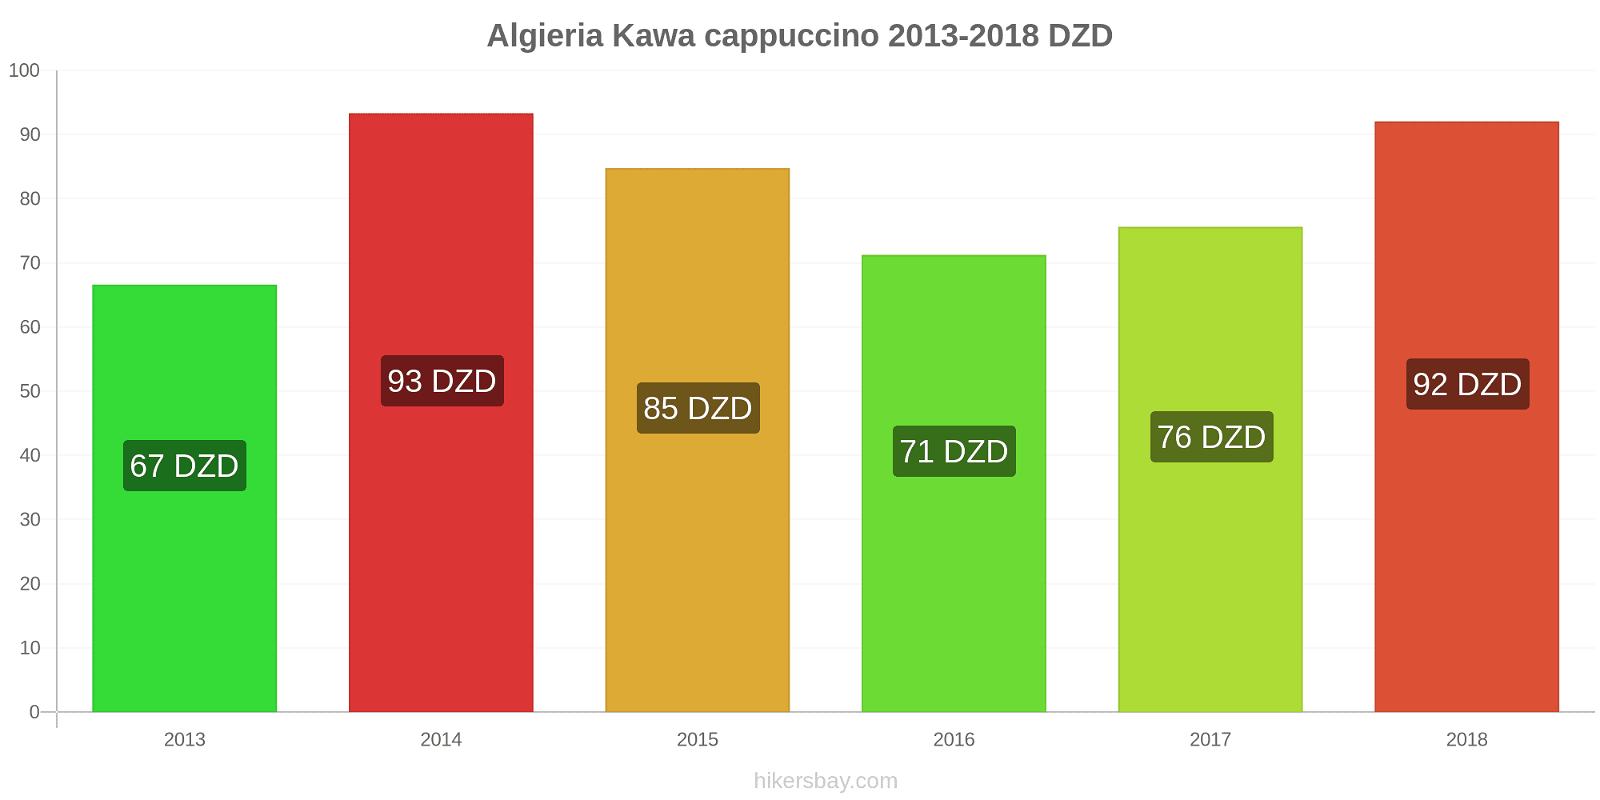 Algieria zmiany cen Kawa cappuccino hikersbay.com